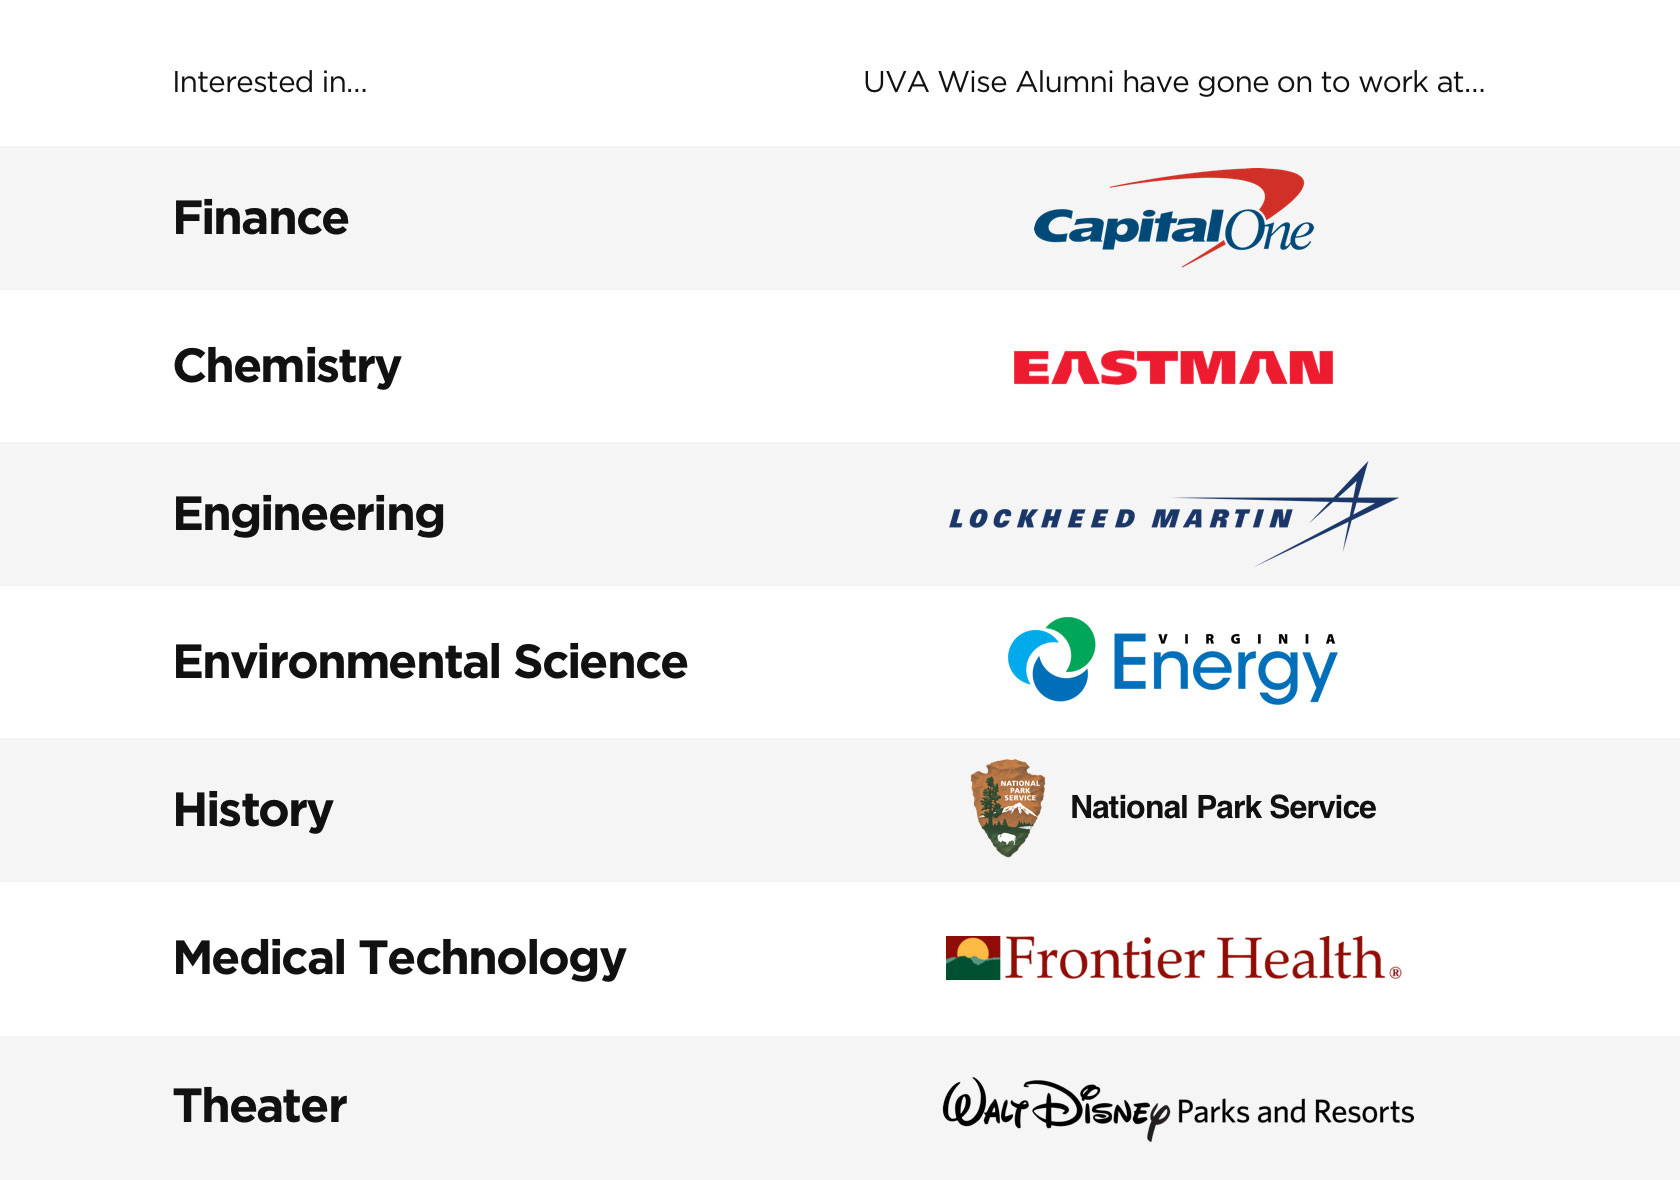 UVA Wise alumni careers